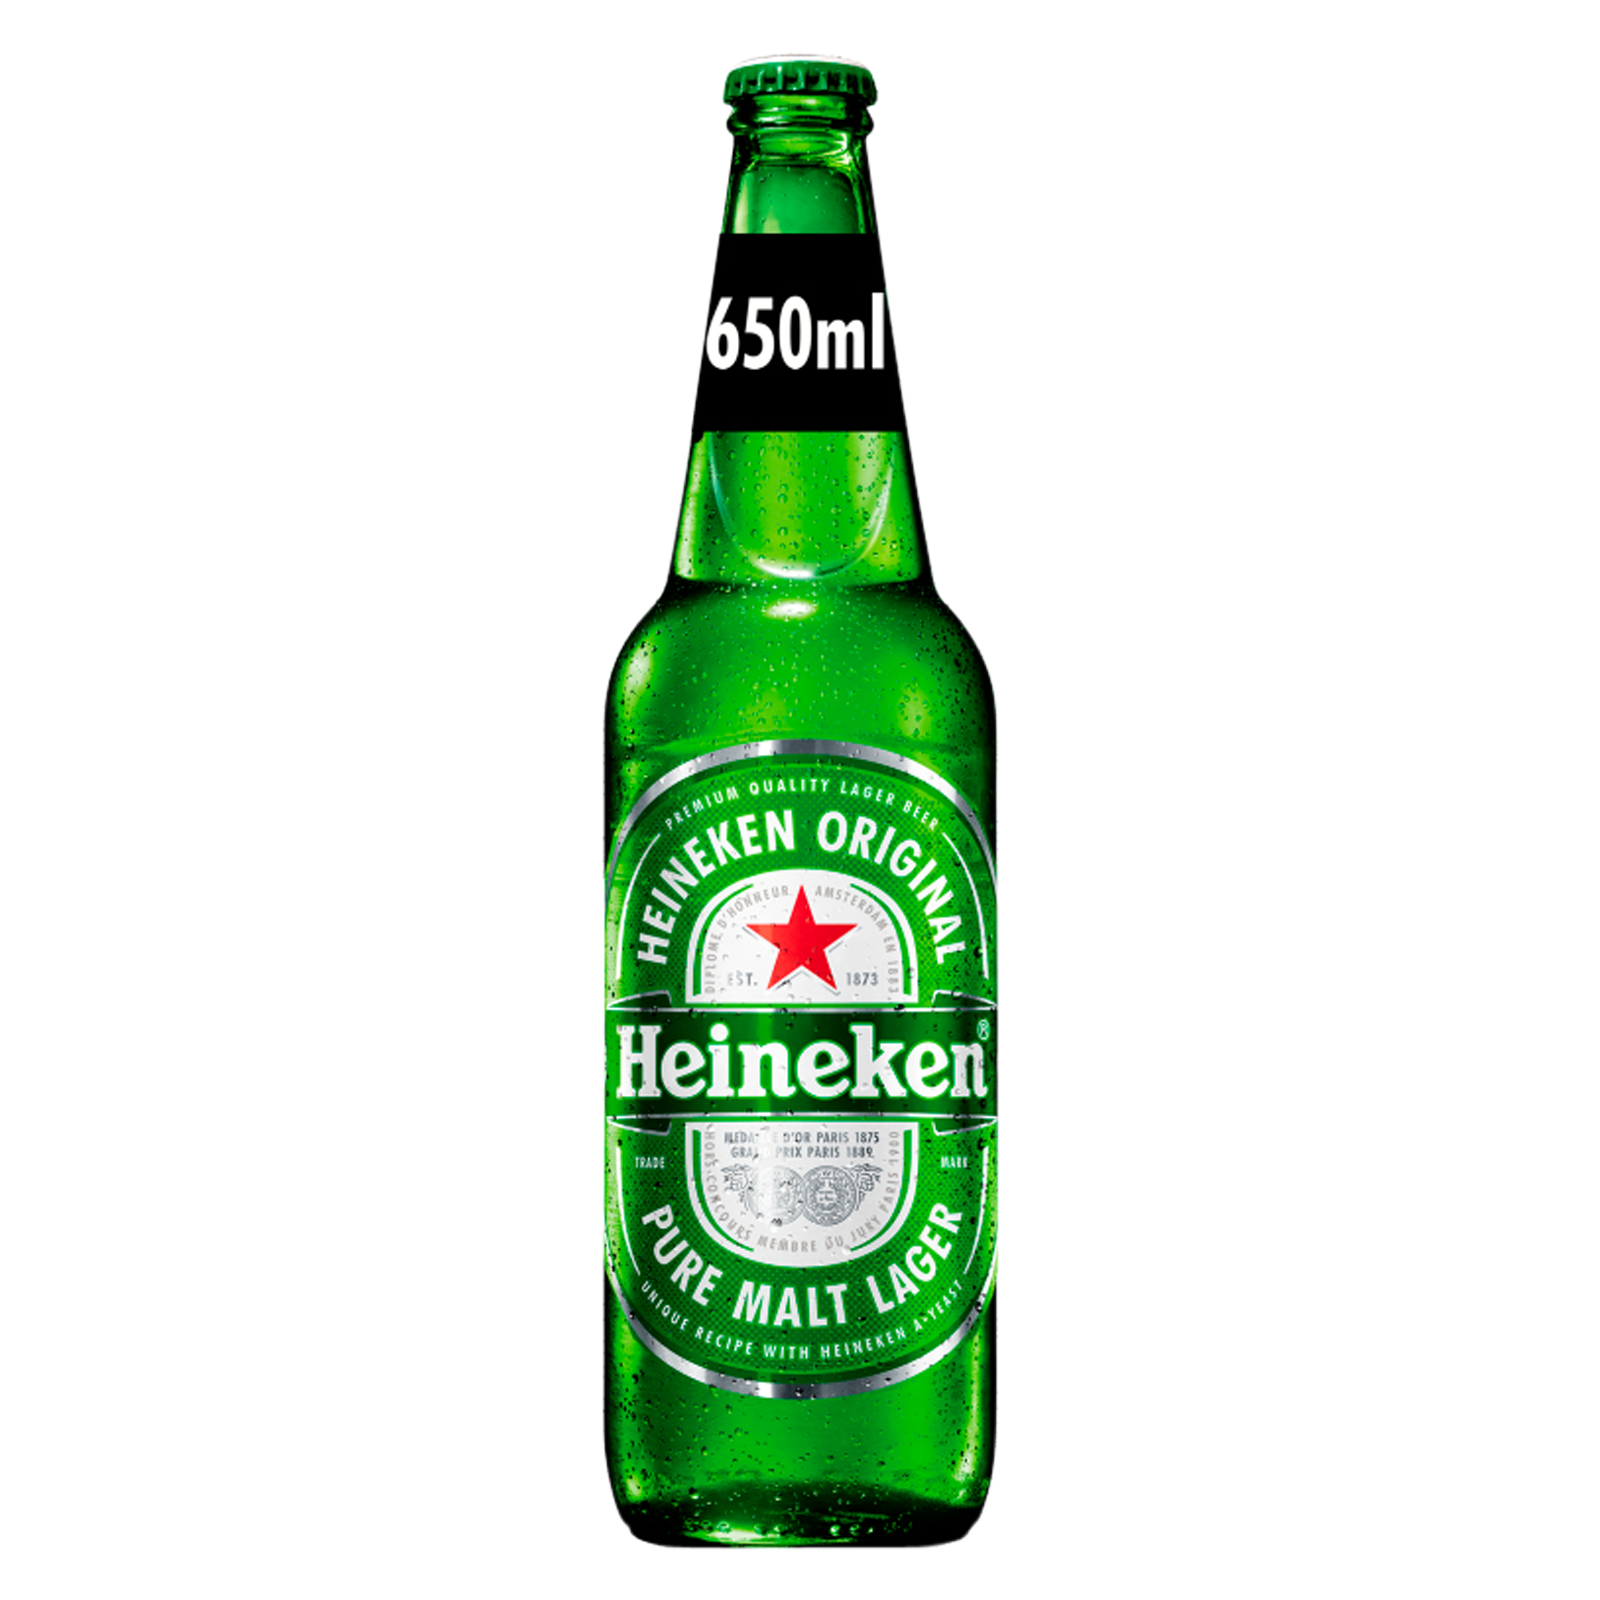 Heineken Premium Lager, 650ml